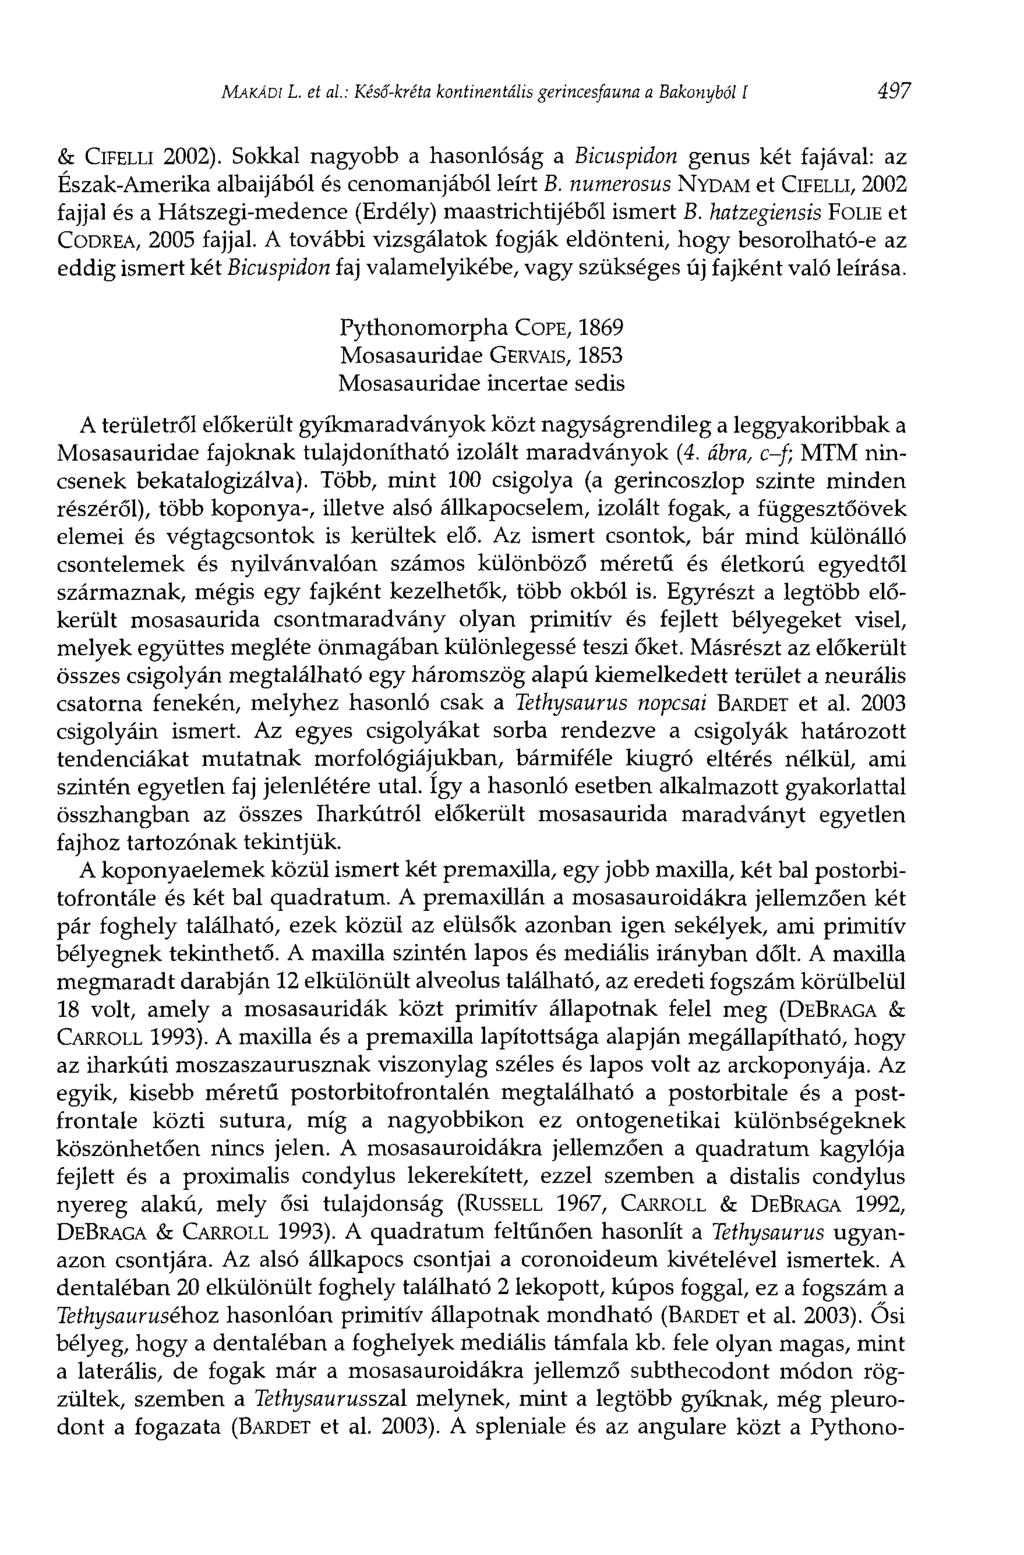 MAKÄDI L. et al: Késő-kréta kontinentális gerincesfauna a Bakonyból í 497 & ClFELLi 2002).